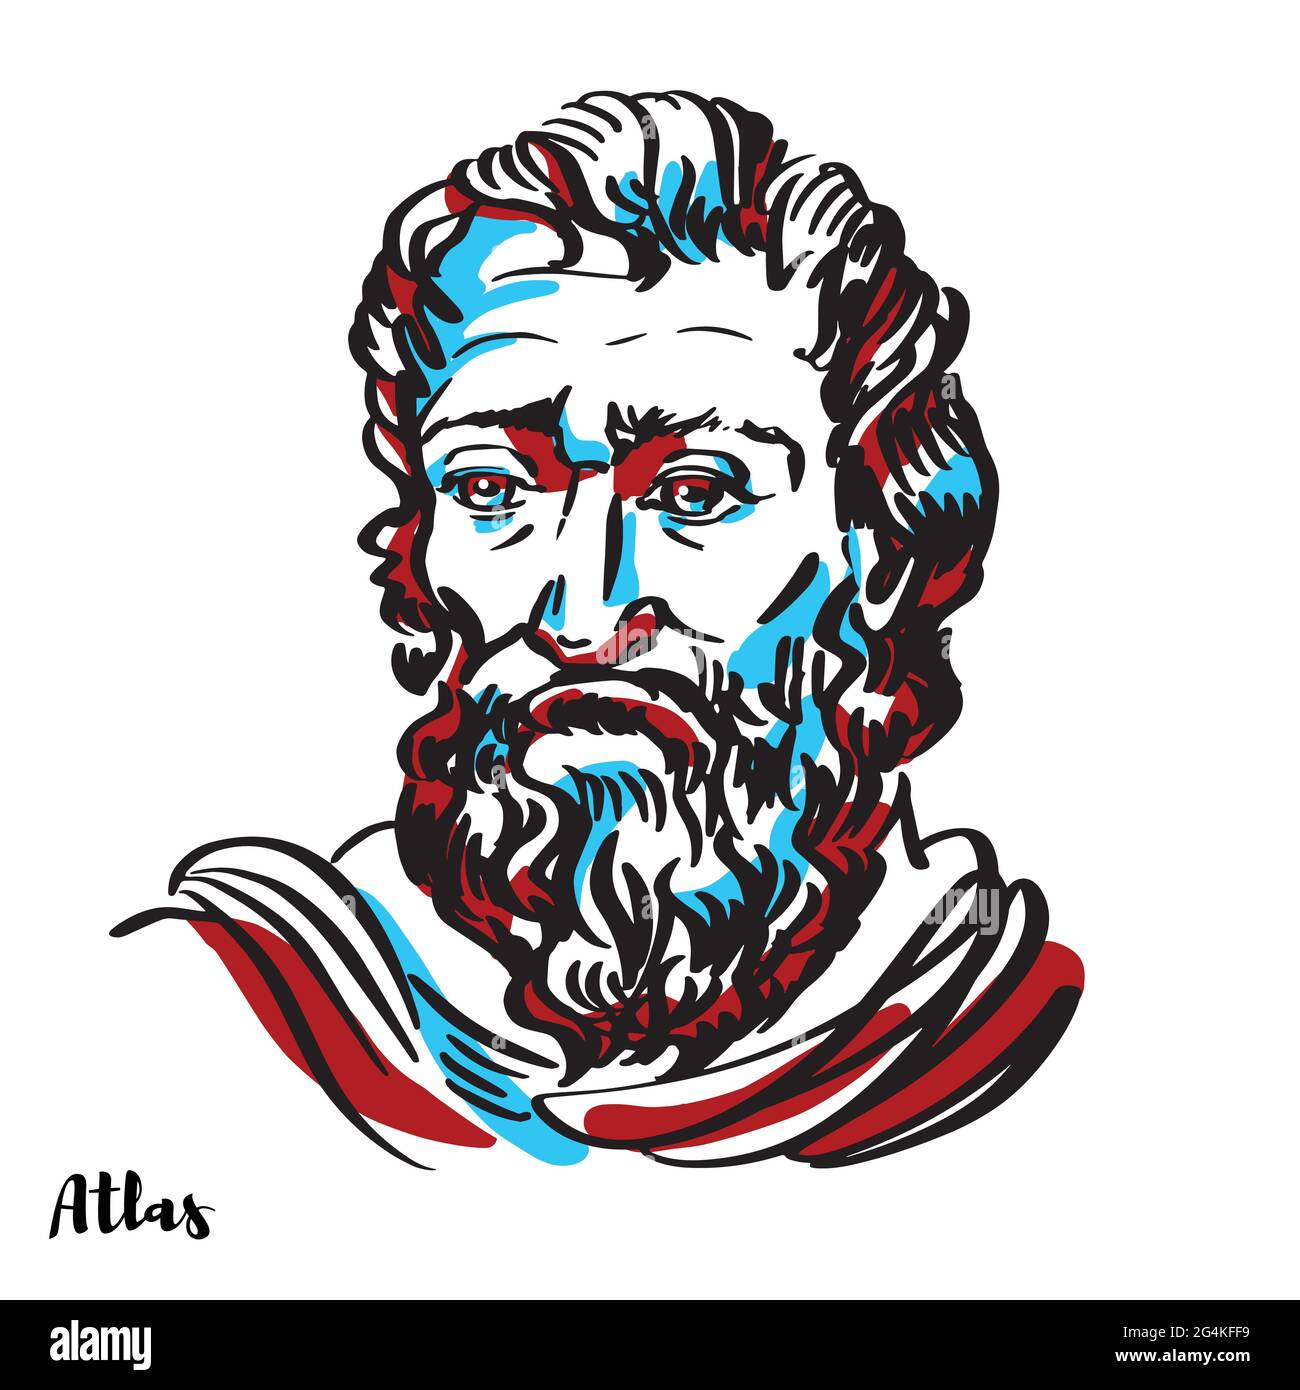 Portrait vectoriel gravé Atlas avec contours d'encre sur fond blanc. Dans la mythologie grecque, Atlas était un Titan condamné pour tenir les cieux célestes Illustration de Vecteur